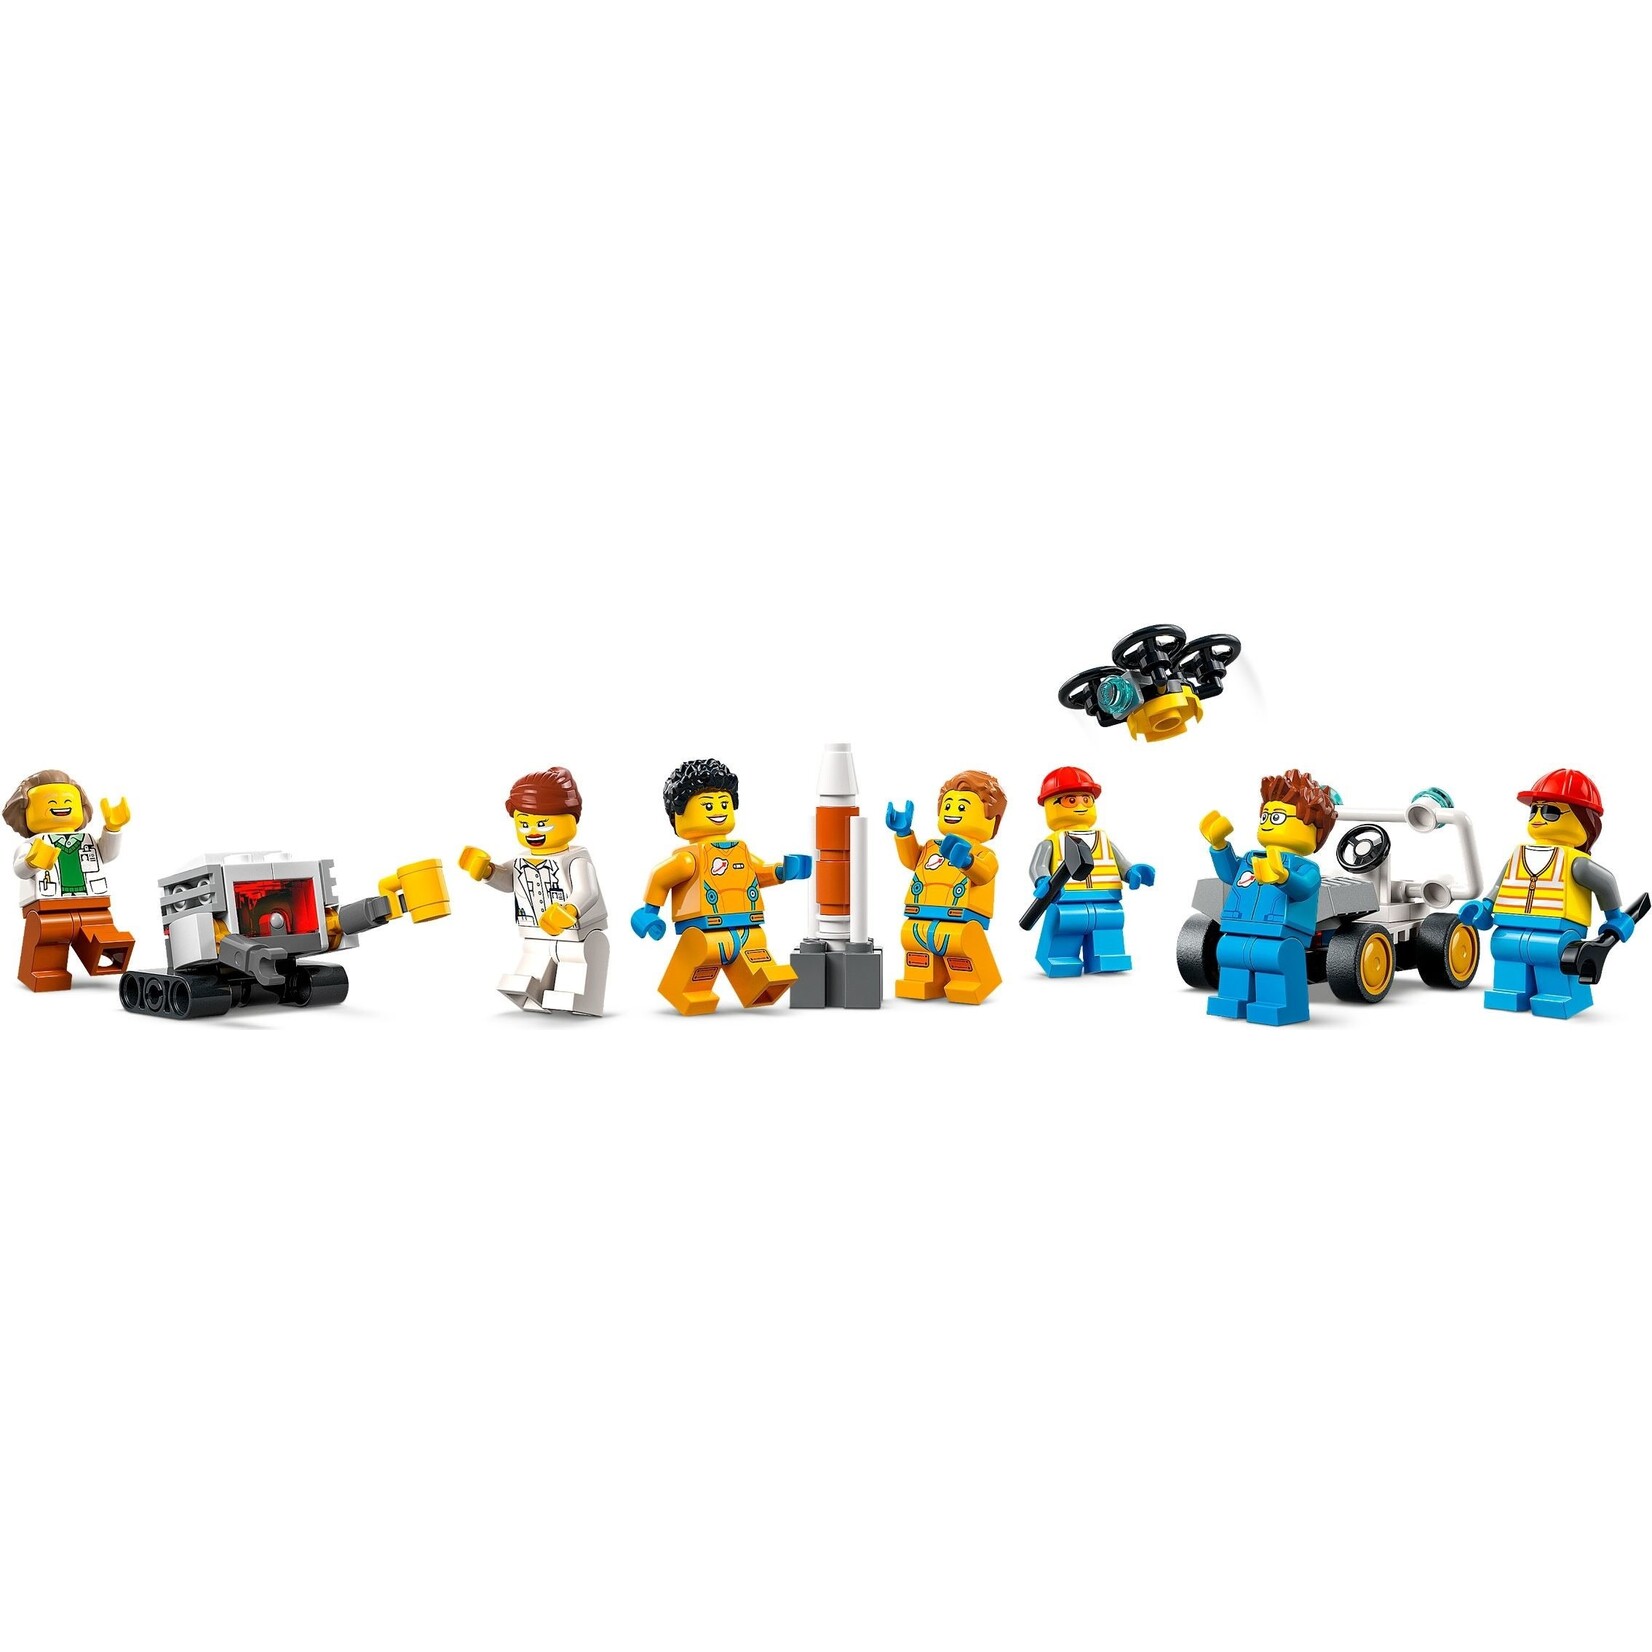 LEGO Raketlanceerbasis - 60351